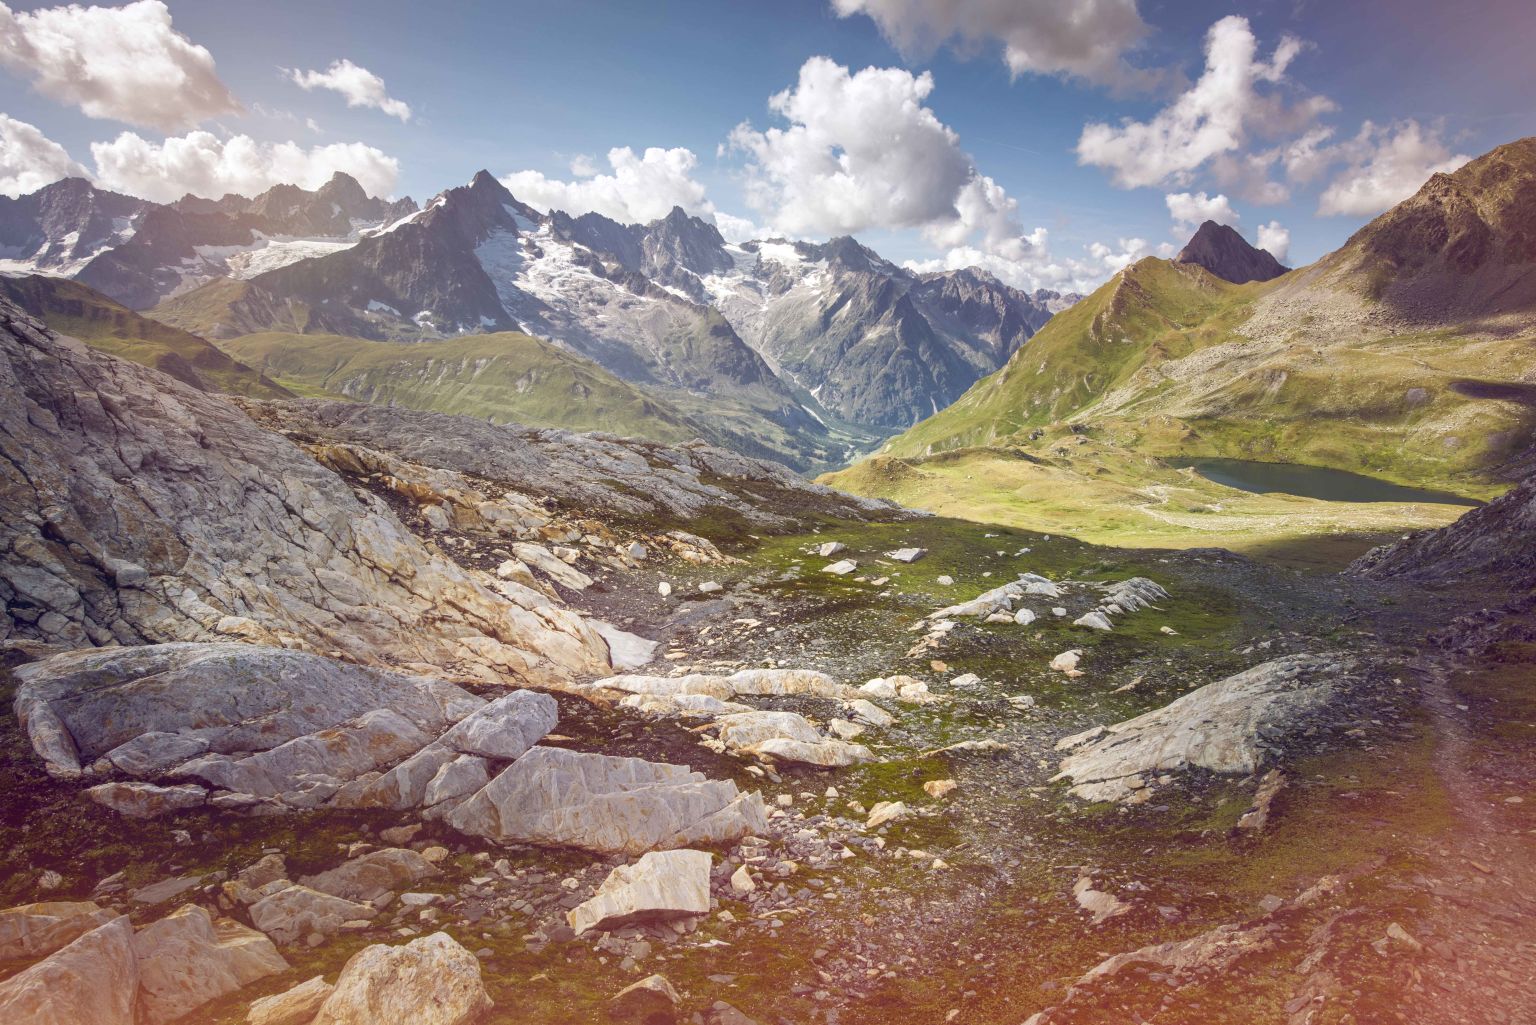 Paysage de montagne avec pierres et lac, Val Ferret, La Fouly, Valais, Suisse